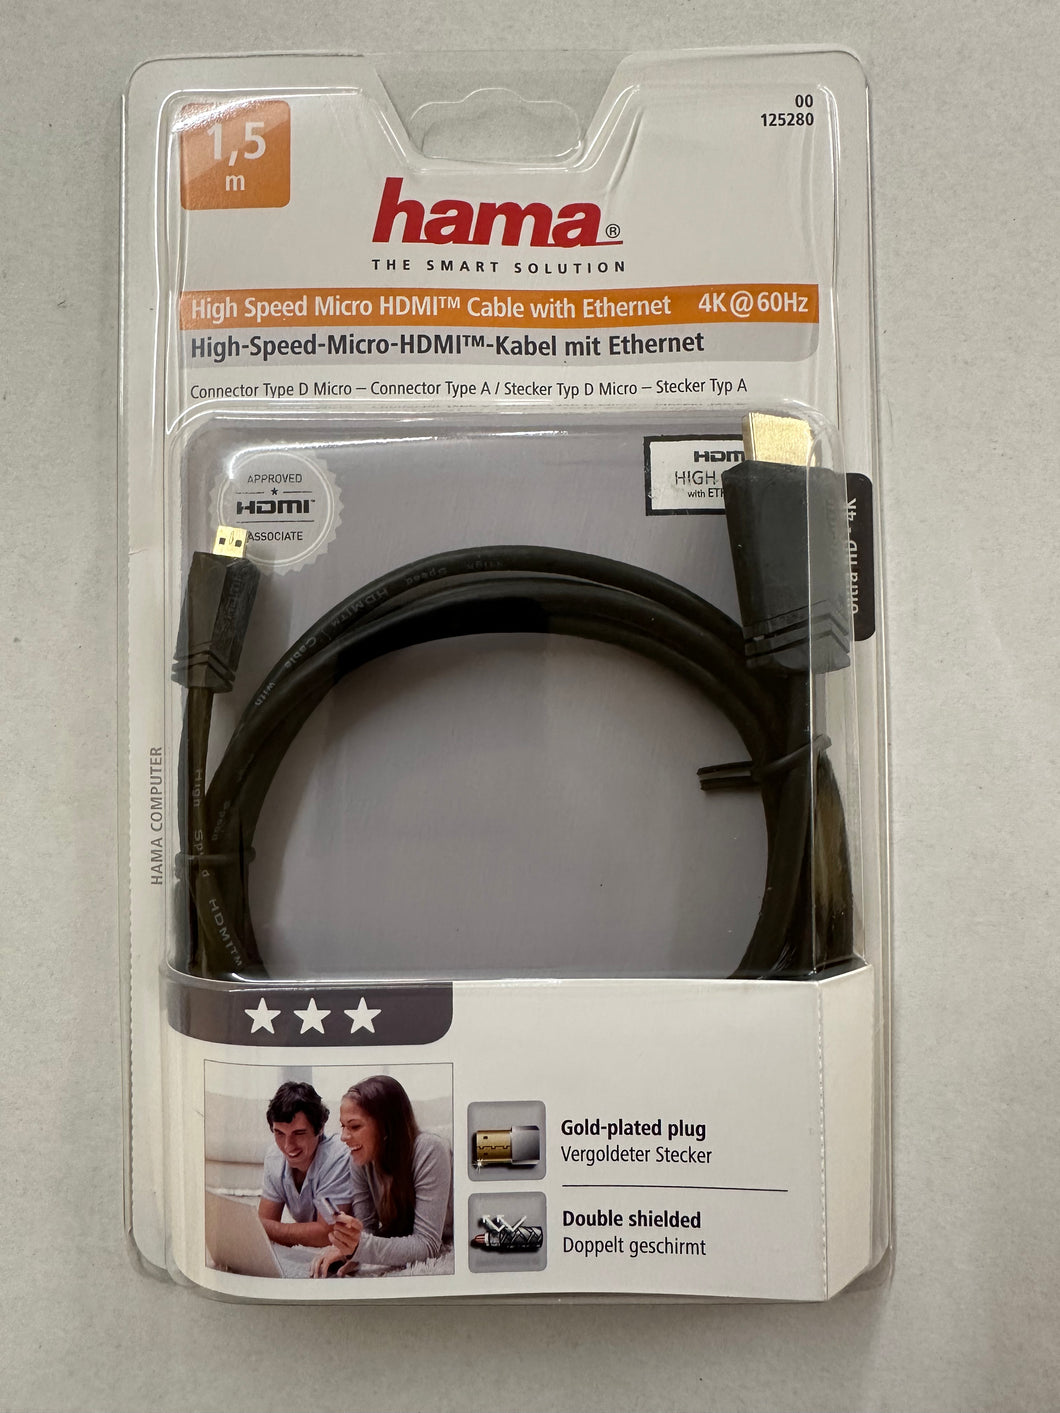 HAMA High Speed Micro-HDMI™-Kabel, vergoldet, Schwarz, 1,50 m (00125280) (ARC)